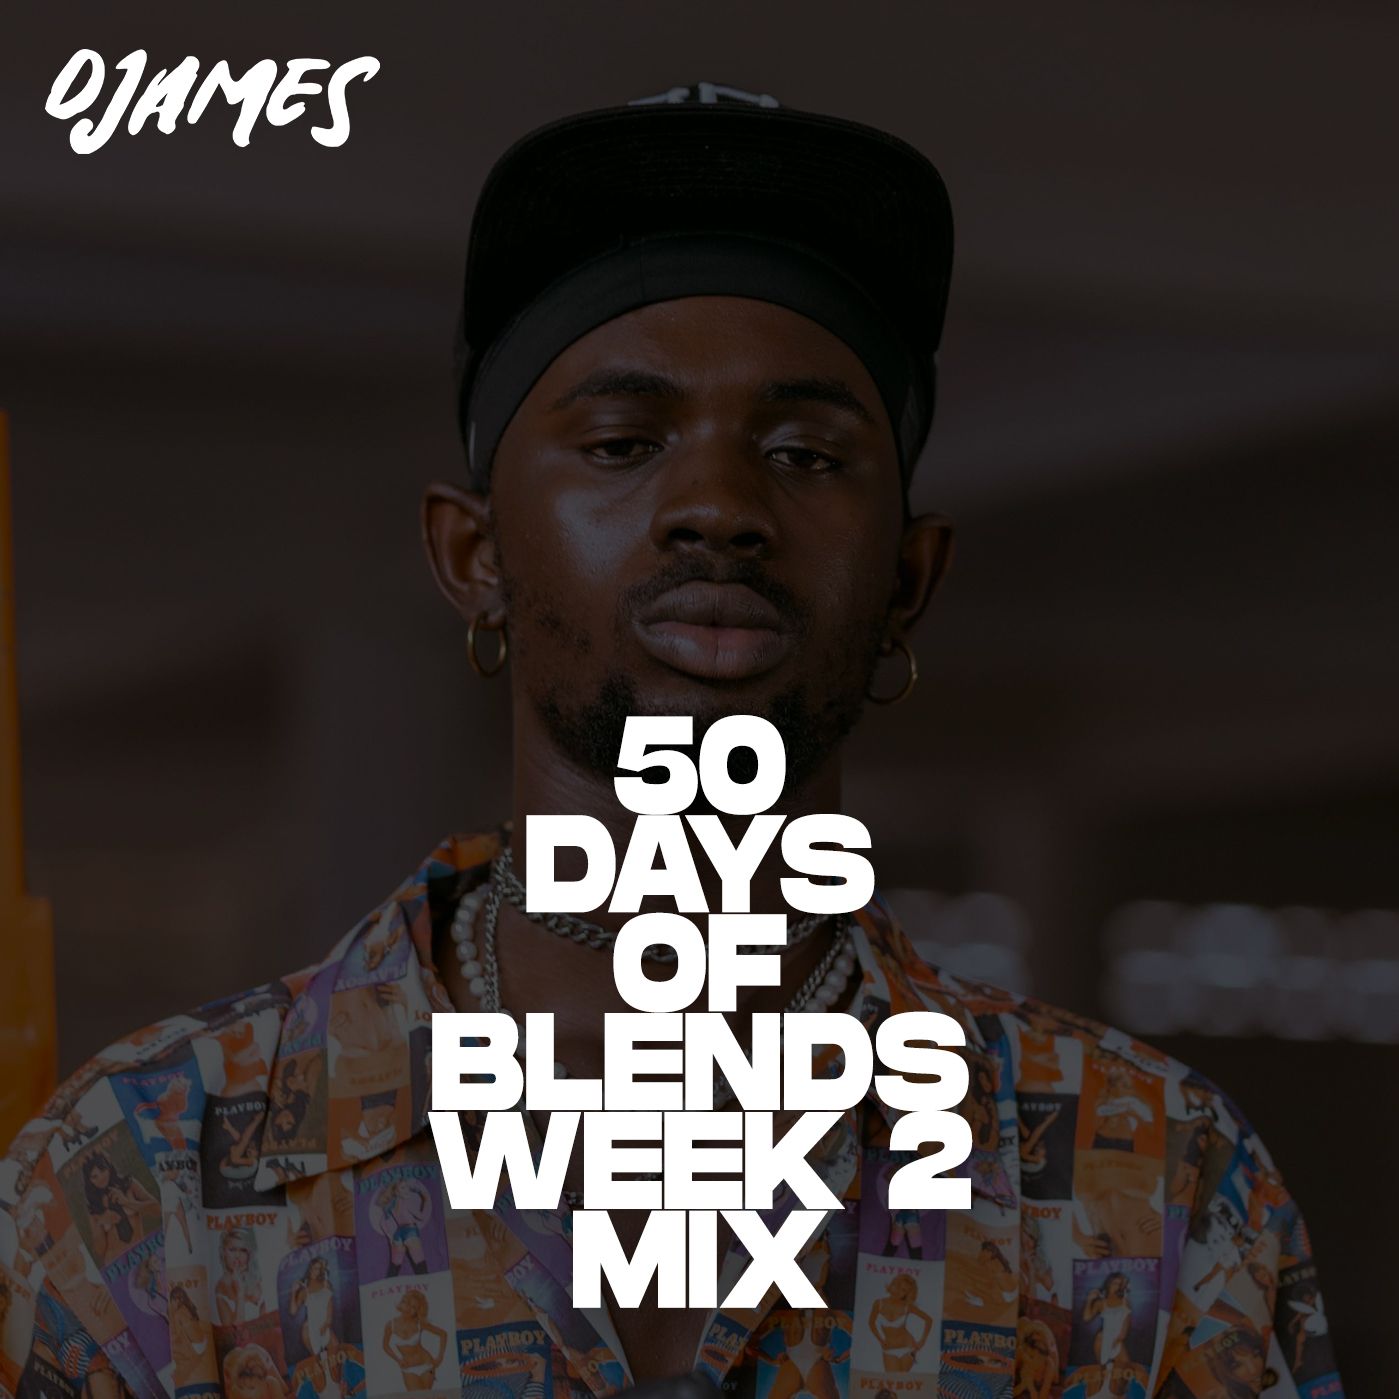 Afrobeats & Dancehall Mashup Mix - DJames #50DaysOfBlends (Week 2)